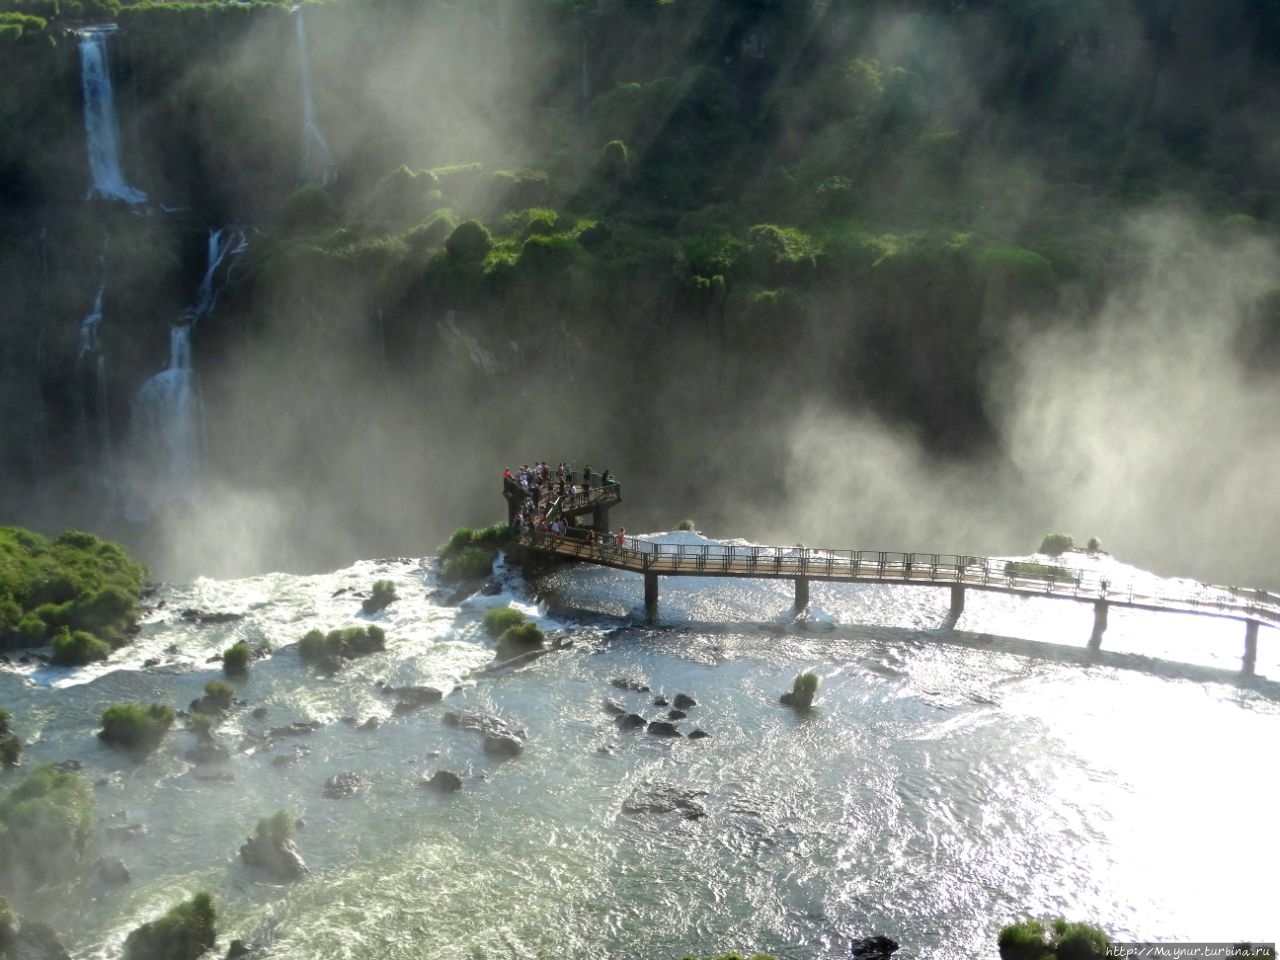 Бразильская сторона   водопада Игуасу Игуасу национальный парк (Бразилия), Бразилия